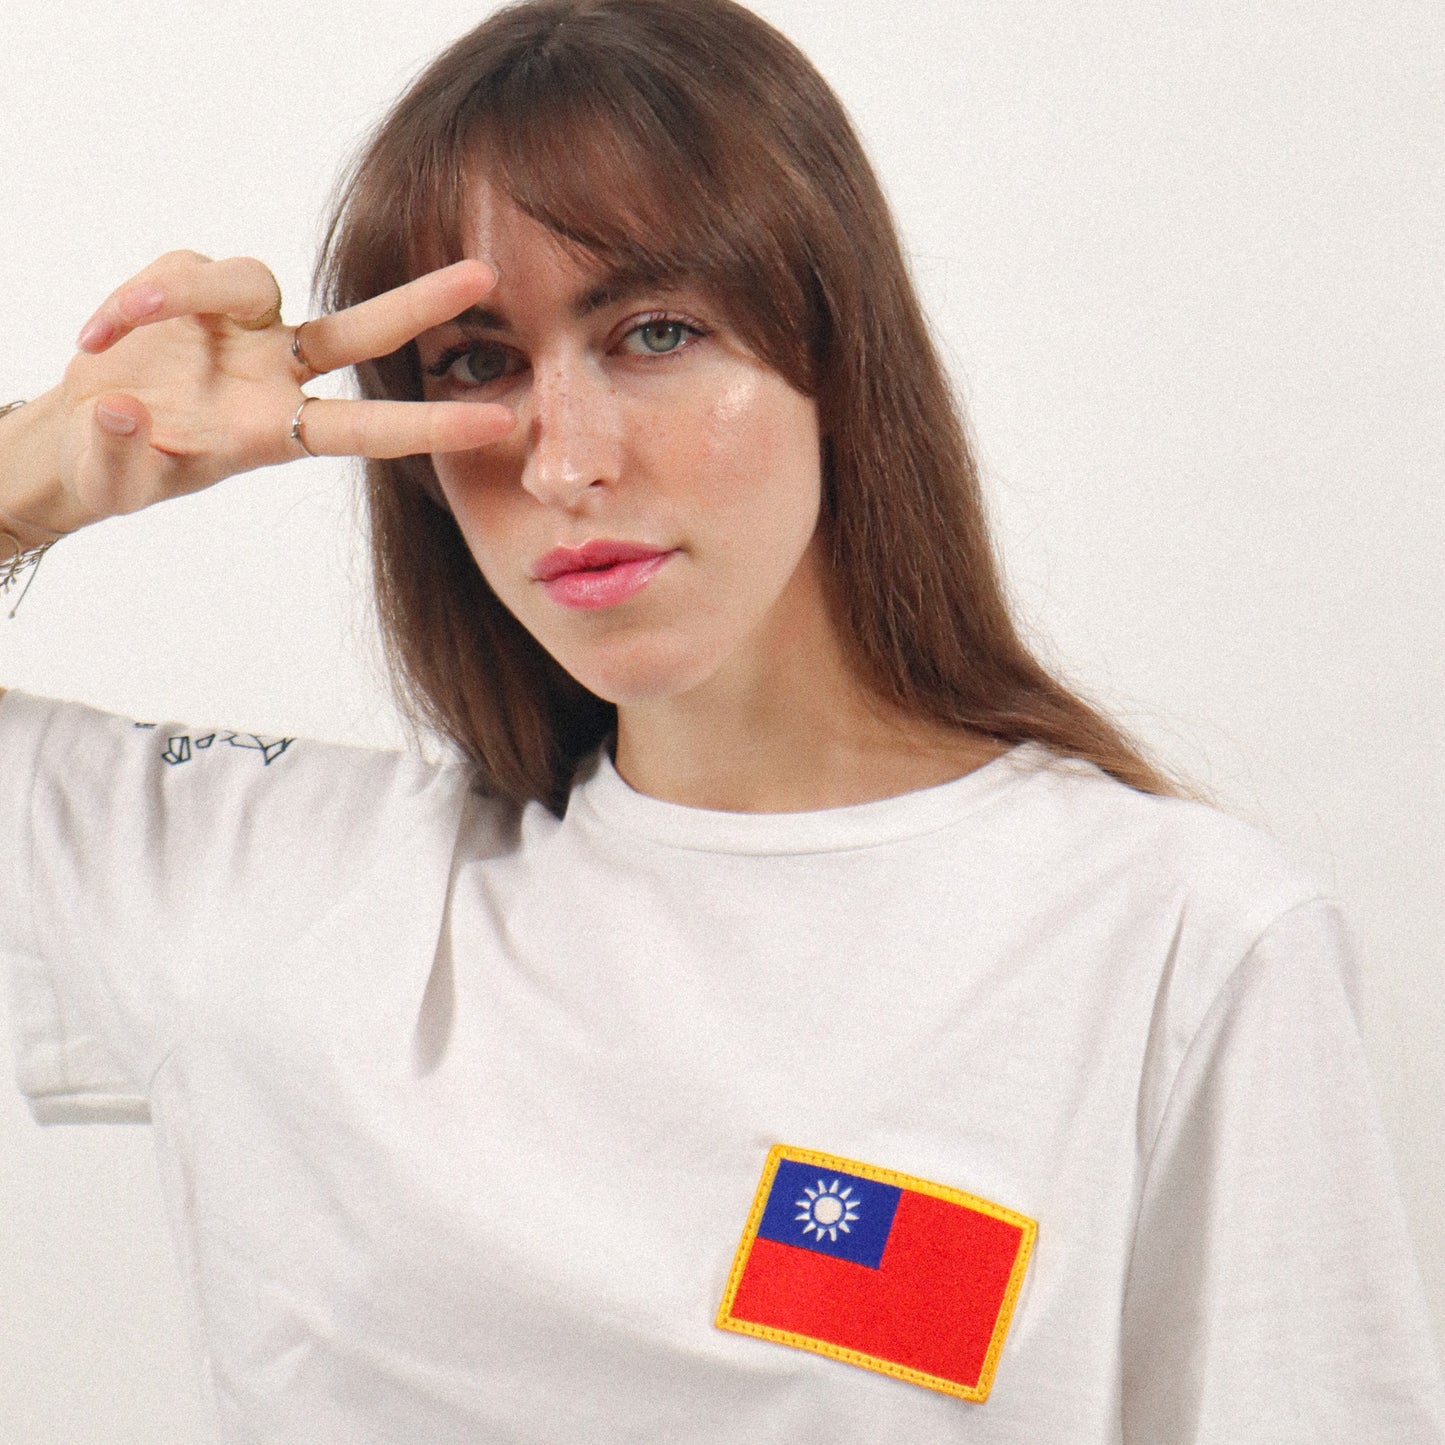 Taiwan - flag t-shirt